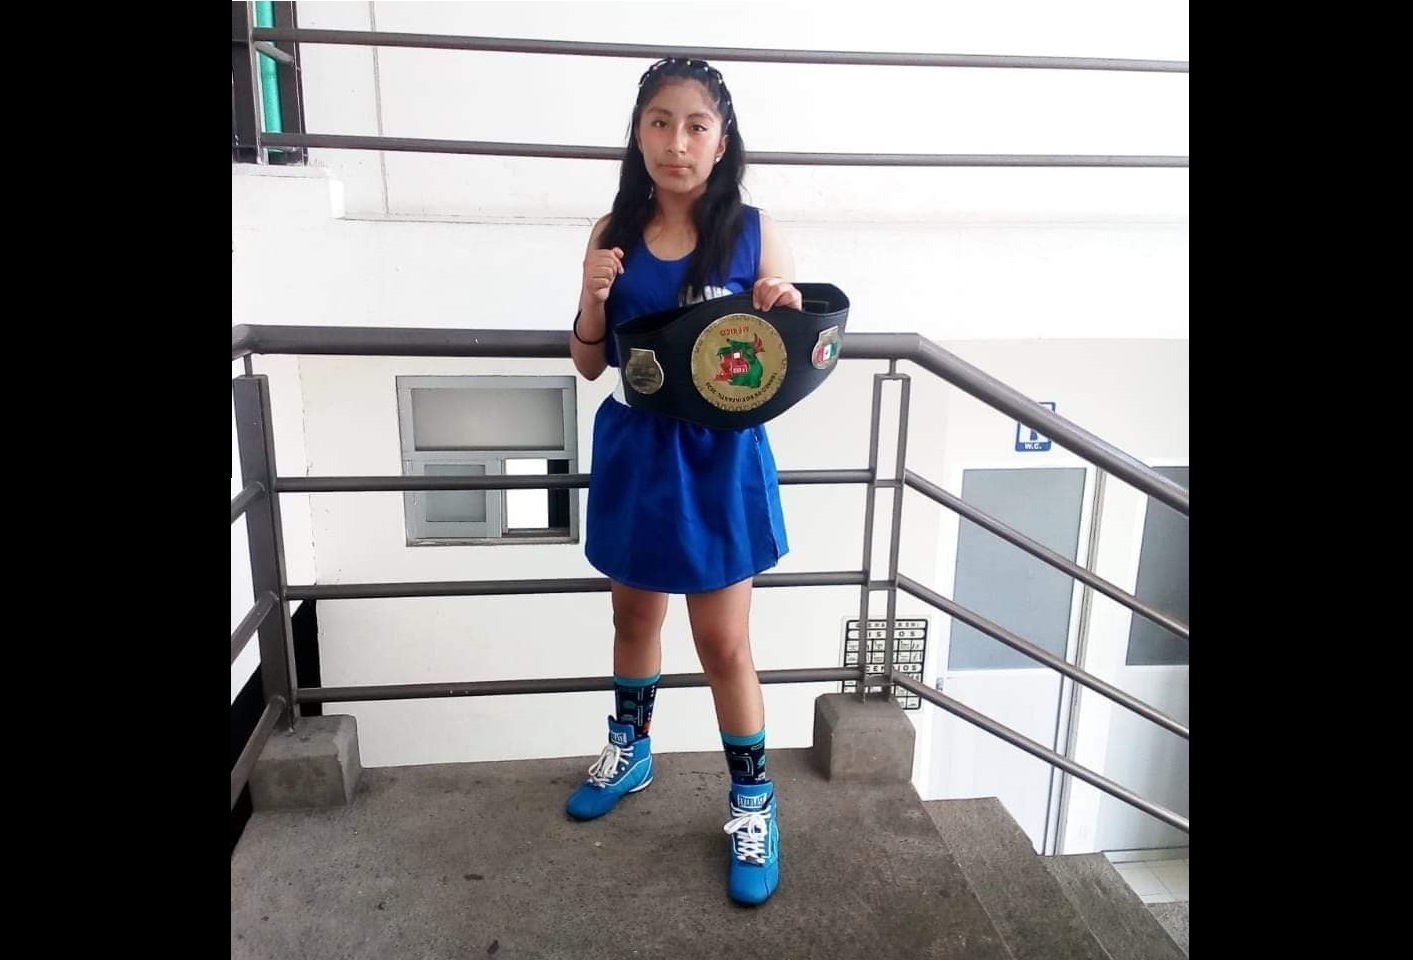 Piden apoyo para que pequeña boxeadora de Tehuacán compita a nivel nacional